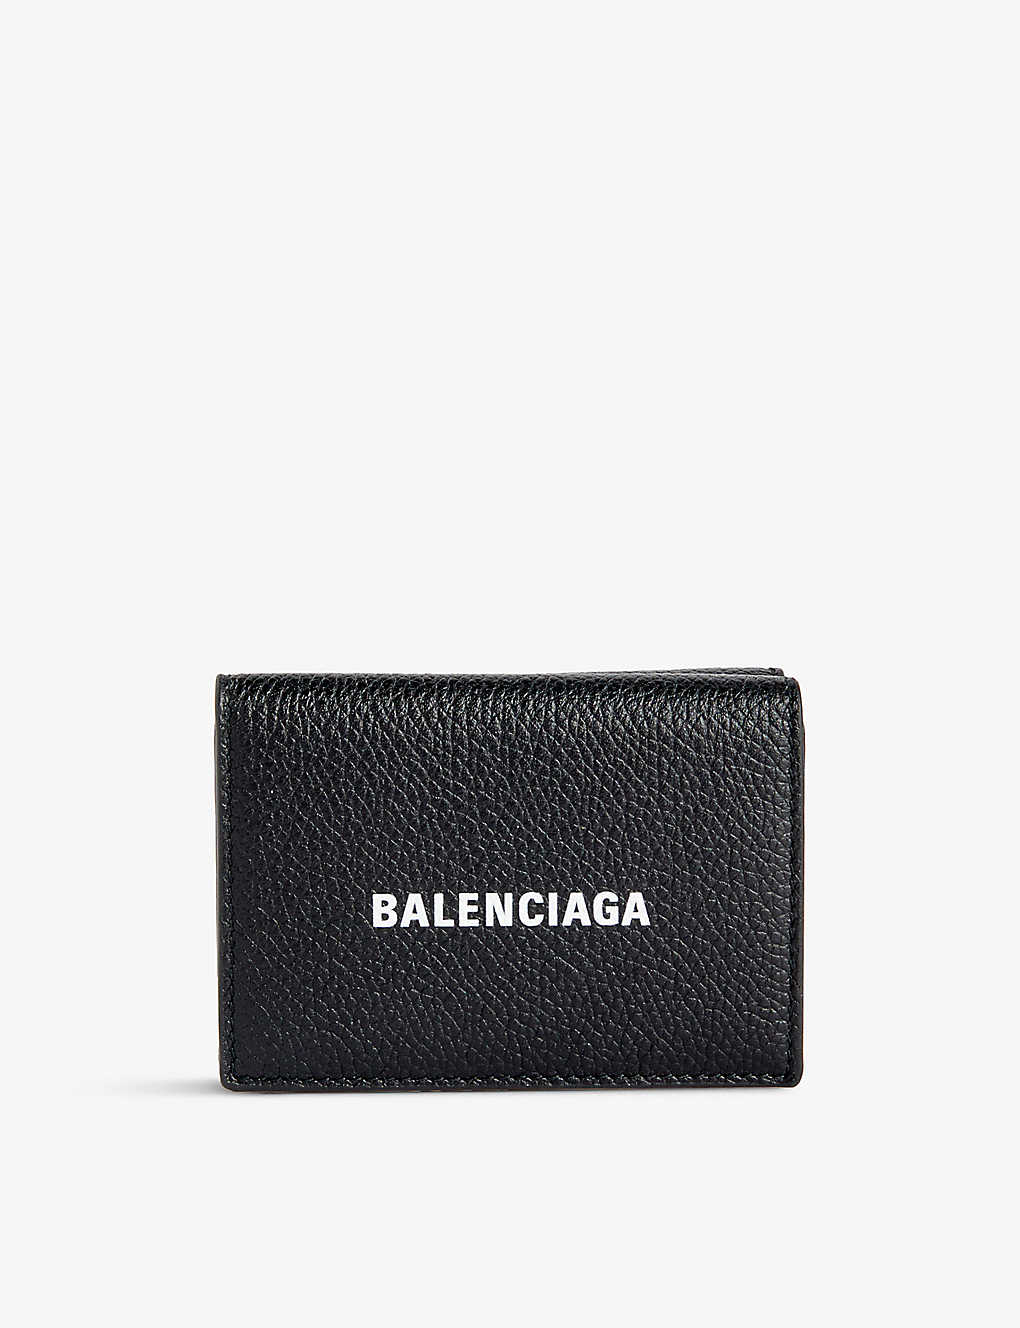 Balenciaga Womens Monochrome Logo-print Mini Leather Wallet In Black/white